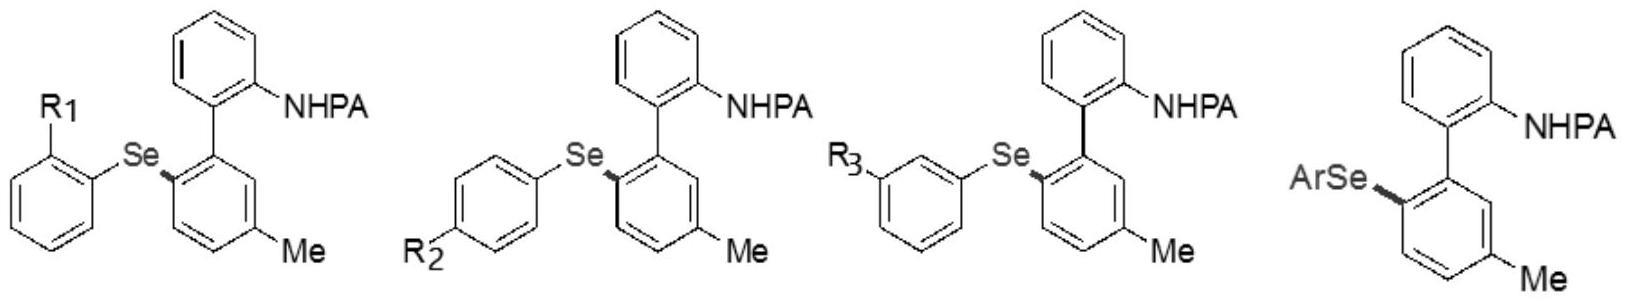 一种钯催化合成硒/硫化2-氨基联苯类化合物及构建含硒/硫八元环衍生物的方法